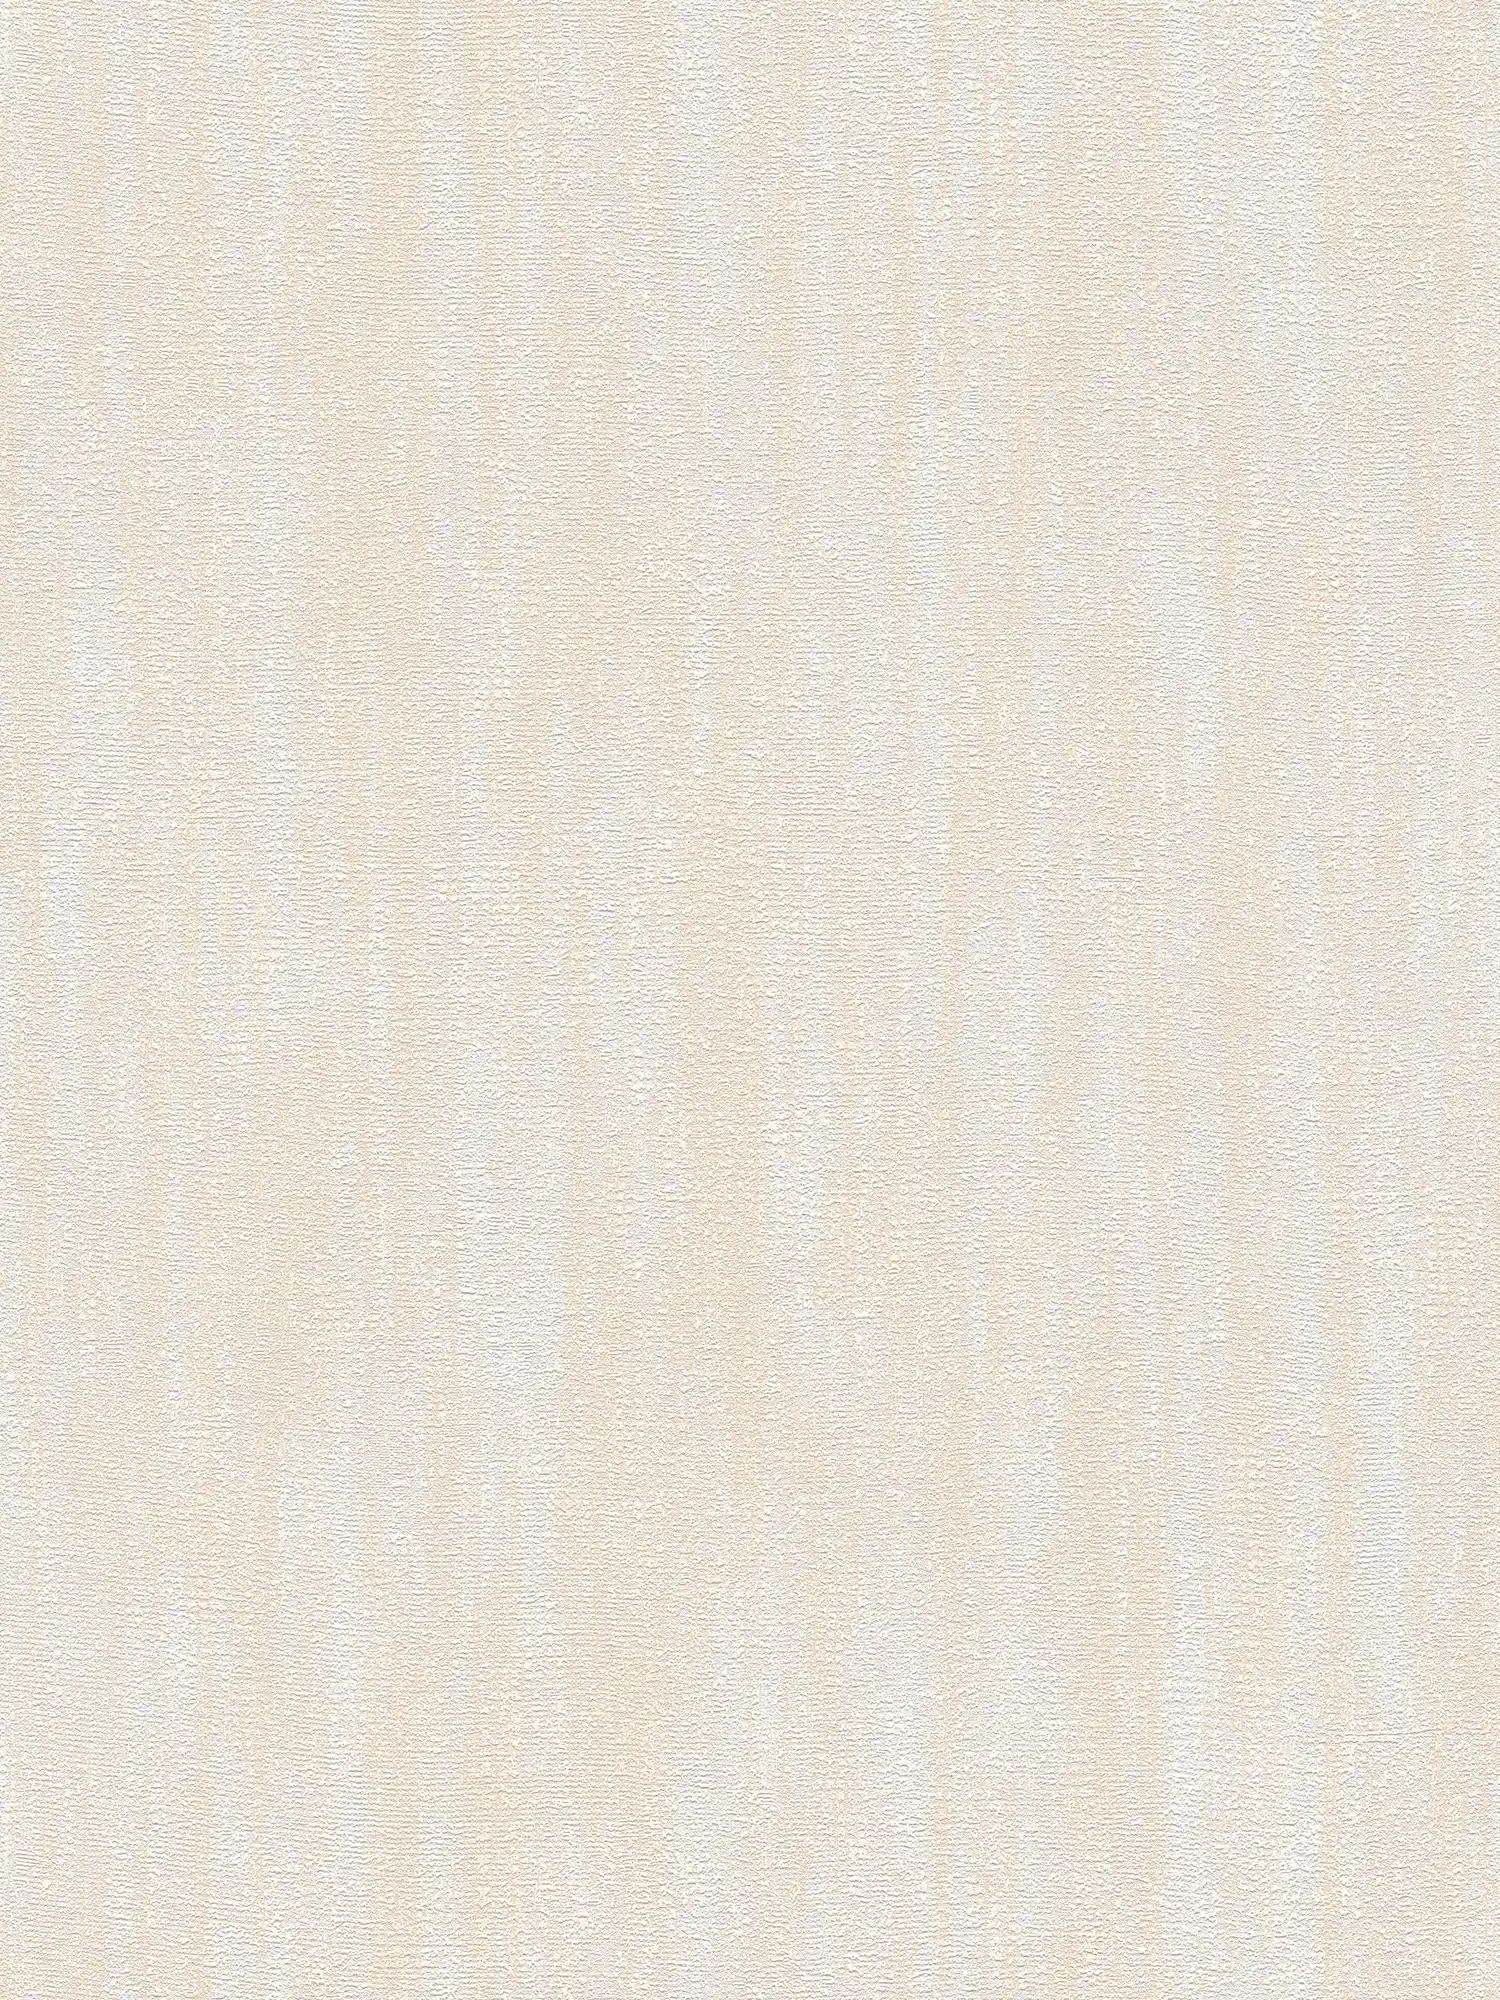 Textured wallpaper with texture pattern - beige, cream
